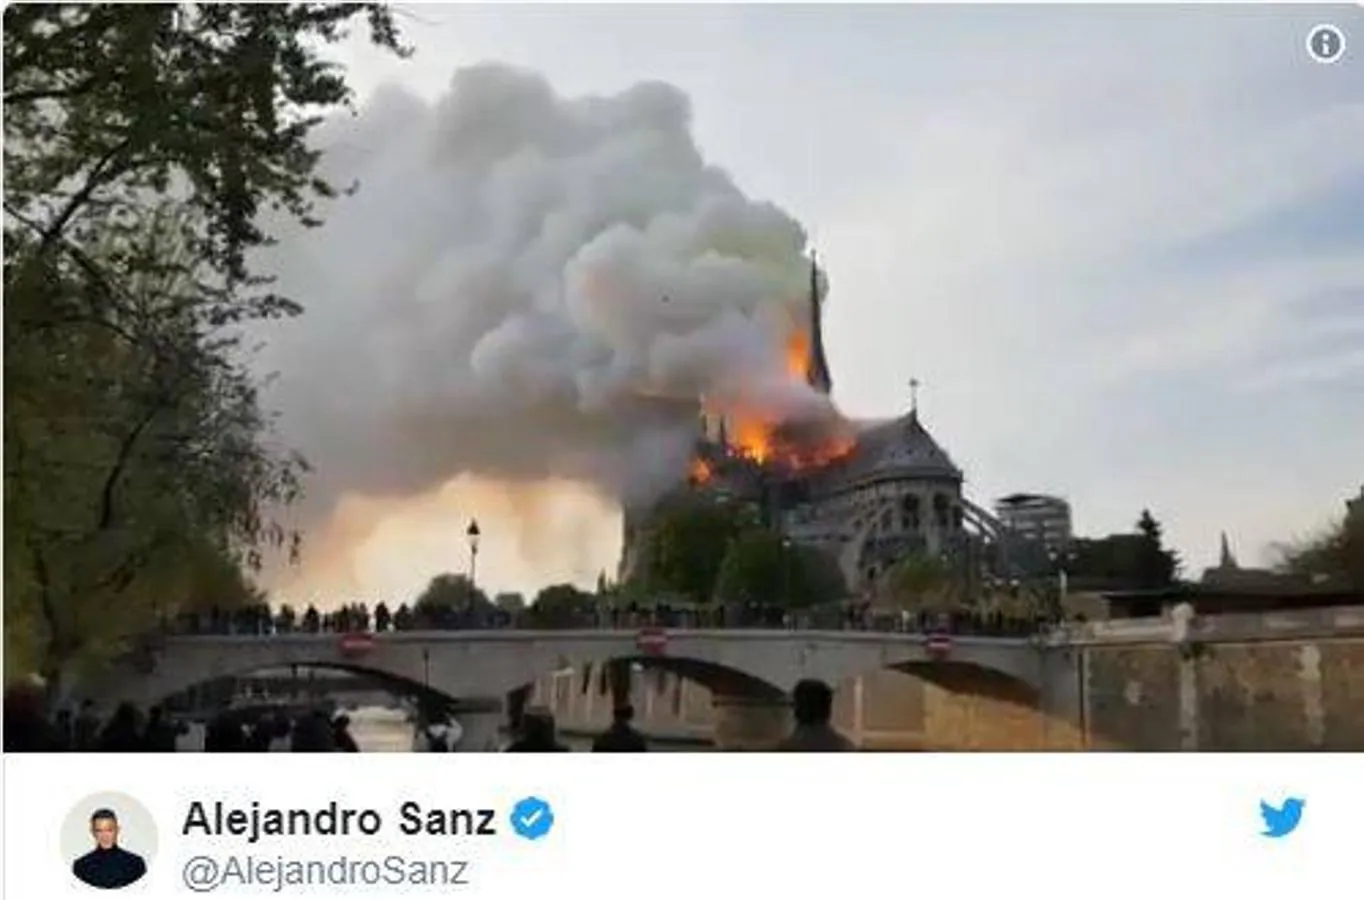 Alejandro Sanz: «Lloro porque hoy es un día triste para el arte, la historia, la arquitectura, para la perfección creada por el hombre…Notre Dame está sufriendo el peor de sus enemigos...». 